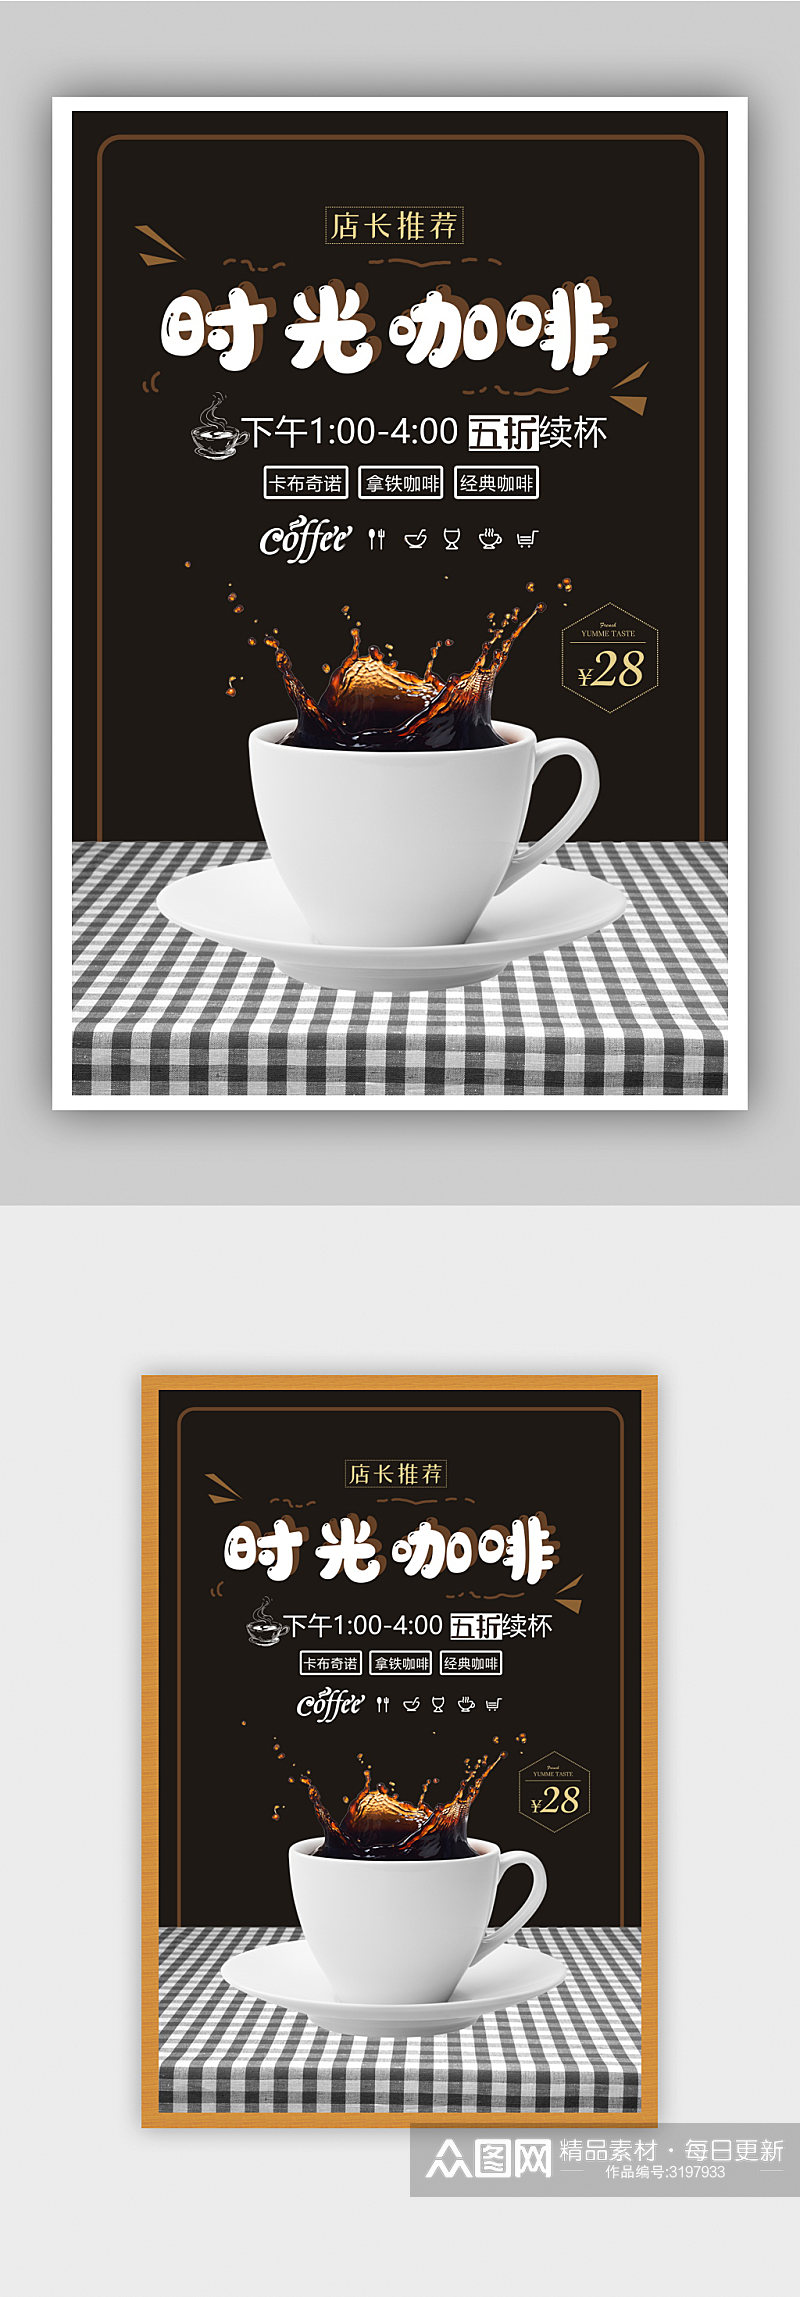 时尚时光咖啡咖啡店促销宣传海报设素材